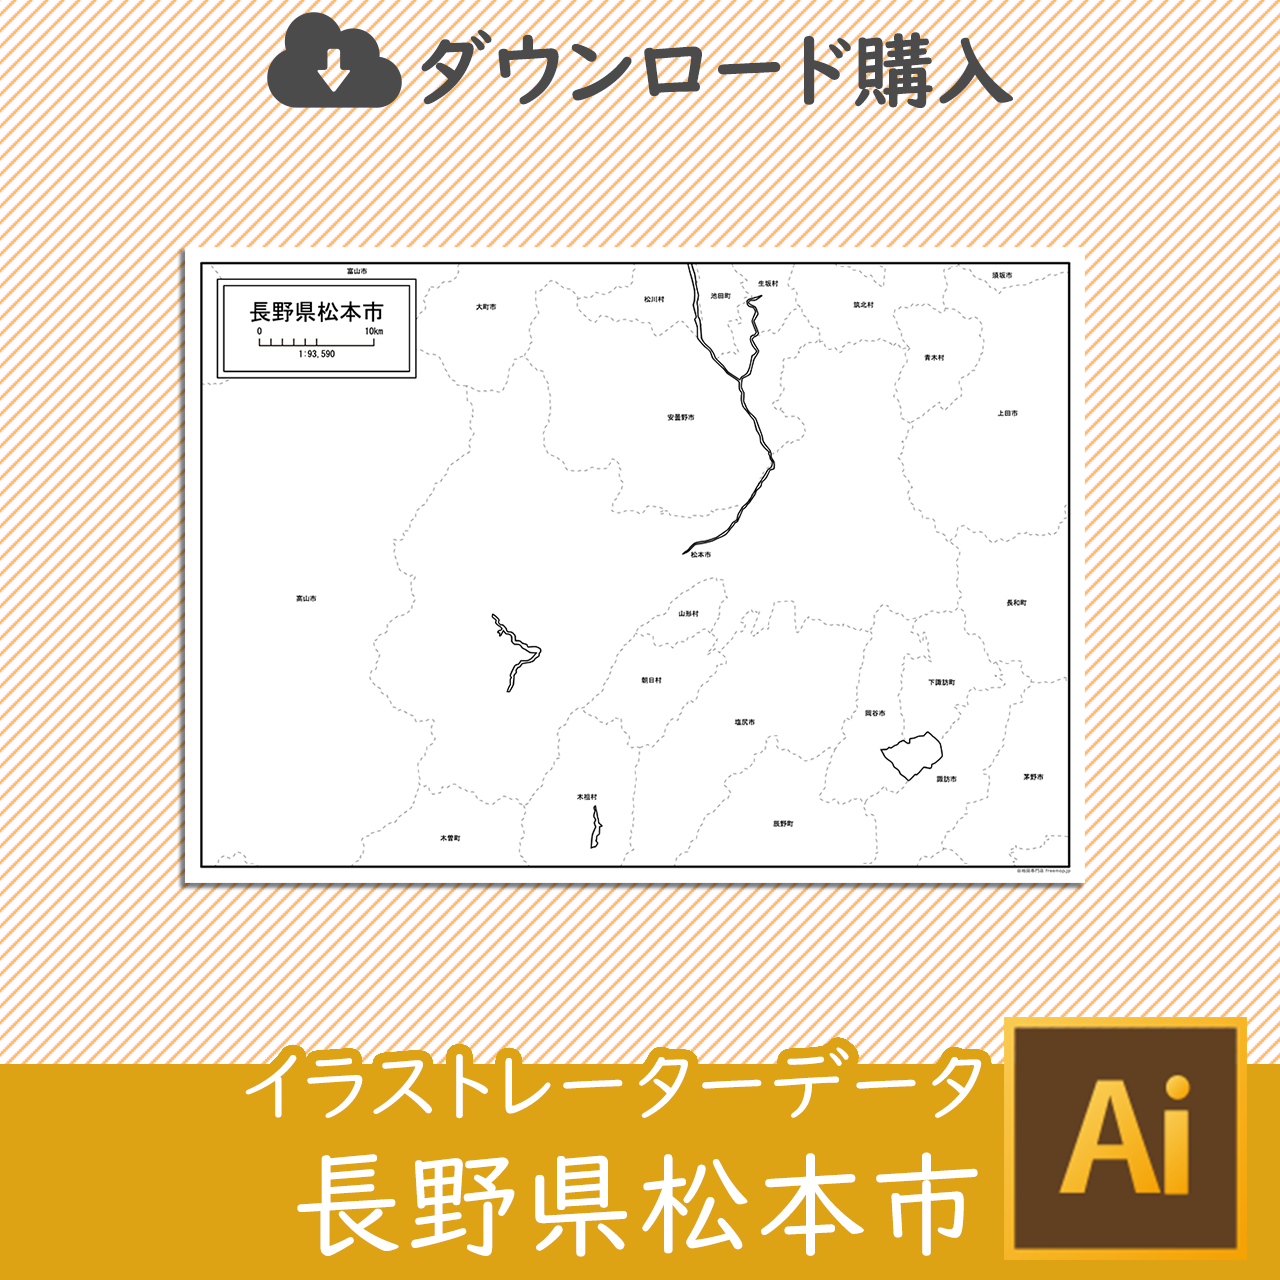 松本市のaiデータのサムネイル画像